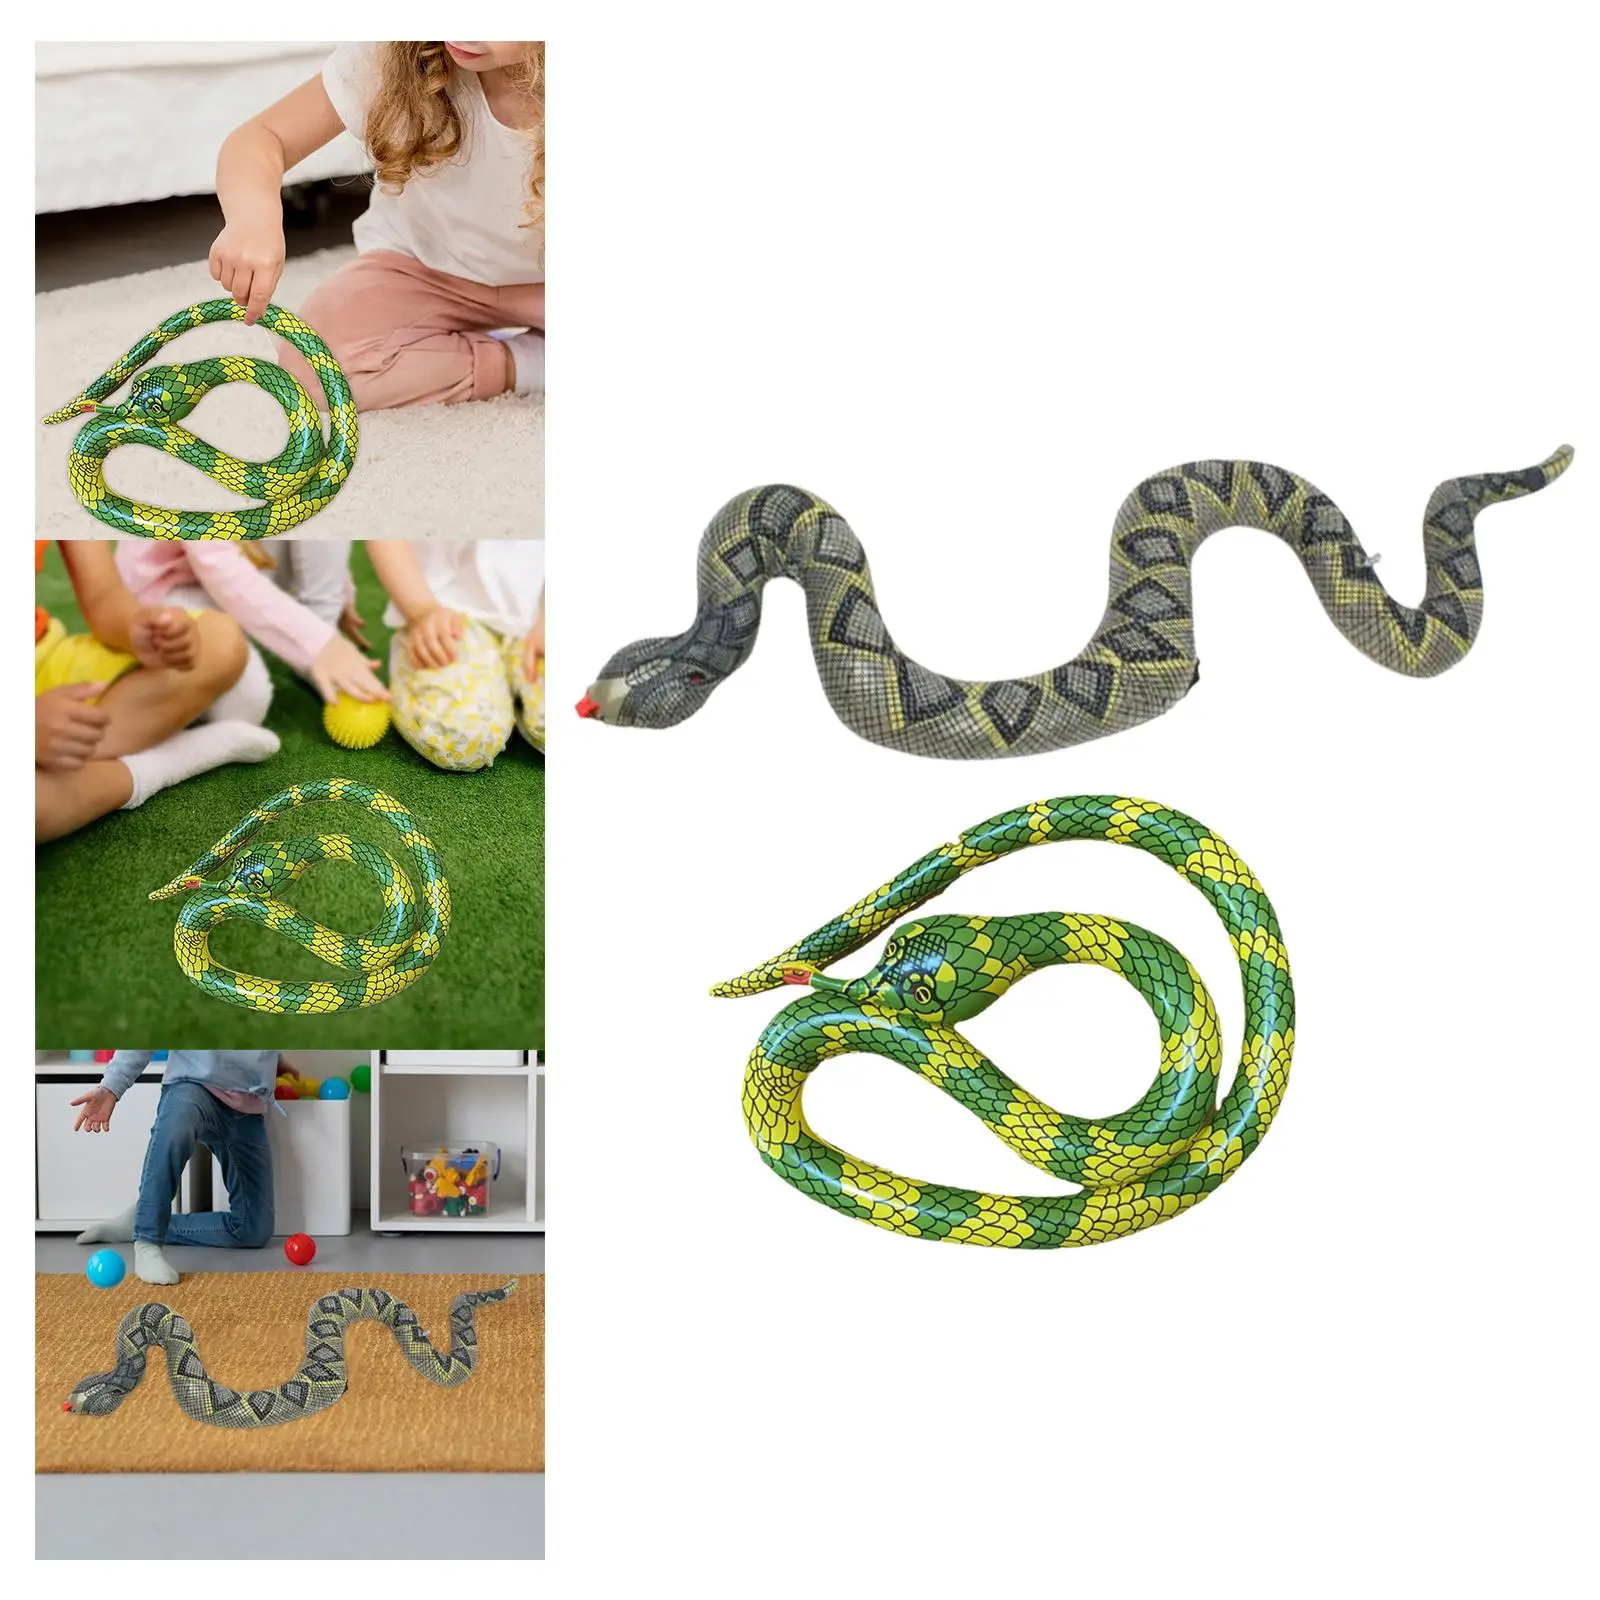 

Надувная игрушка-змея, страшная жуткая игрушка-змея, надувной бассейн, плавающая игрушка-змея, имитация змеи, украшение на Хэллоуин, искусственная змея